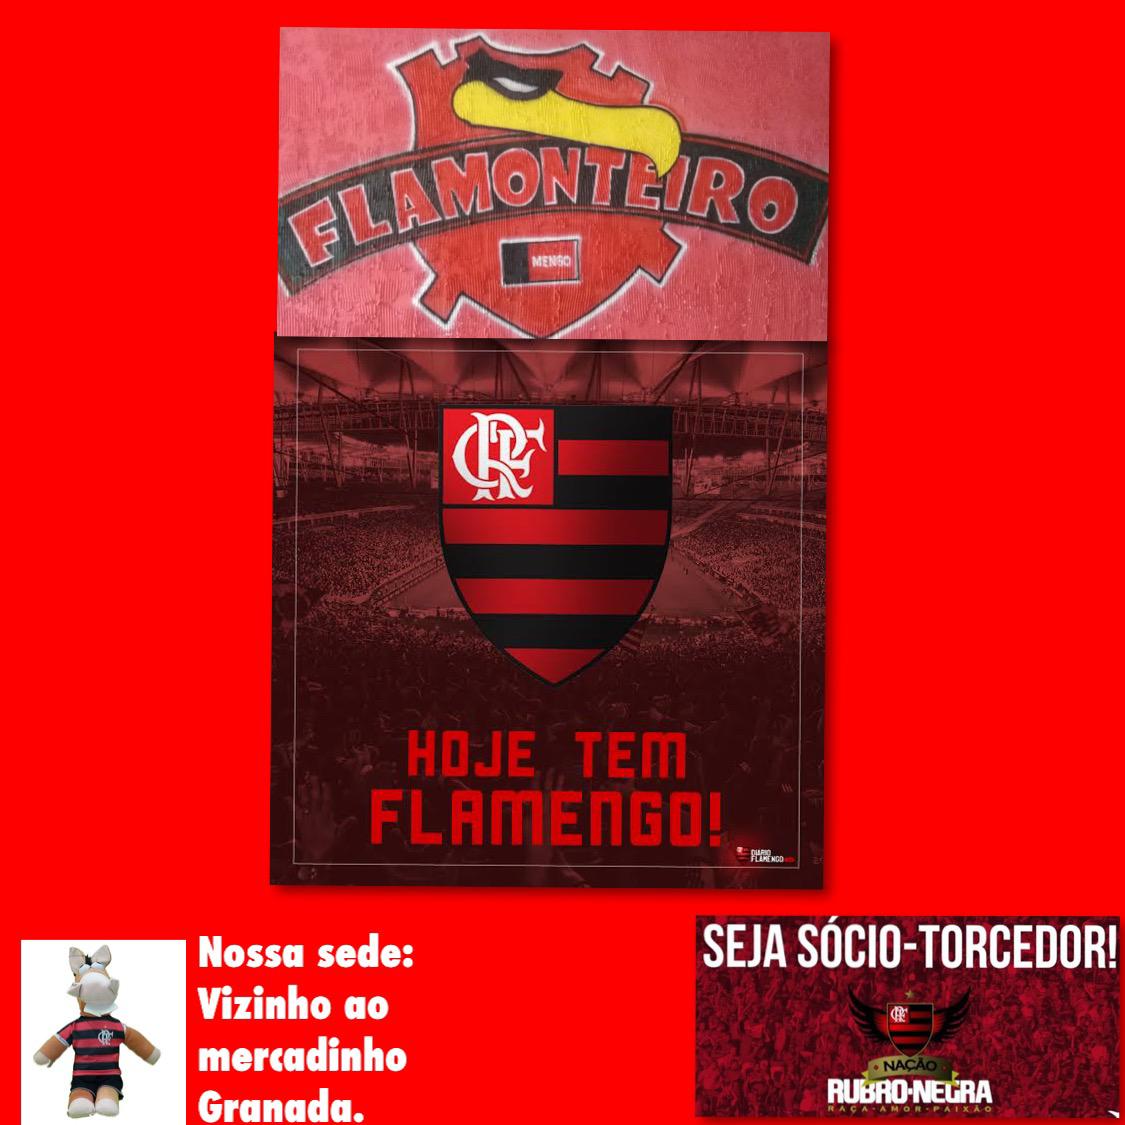 IMG-20190710-WA0004 Hoje tem jogo na sede da maior torcida organizada do Flamengo do Cariri a Fla-Monteiro.